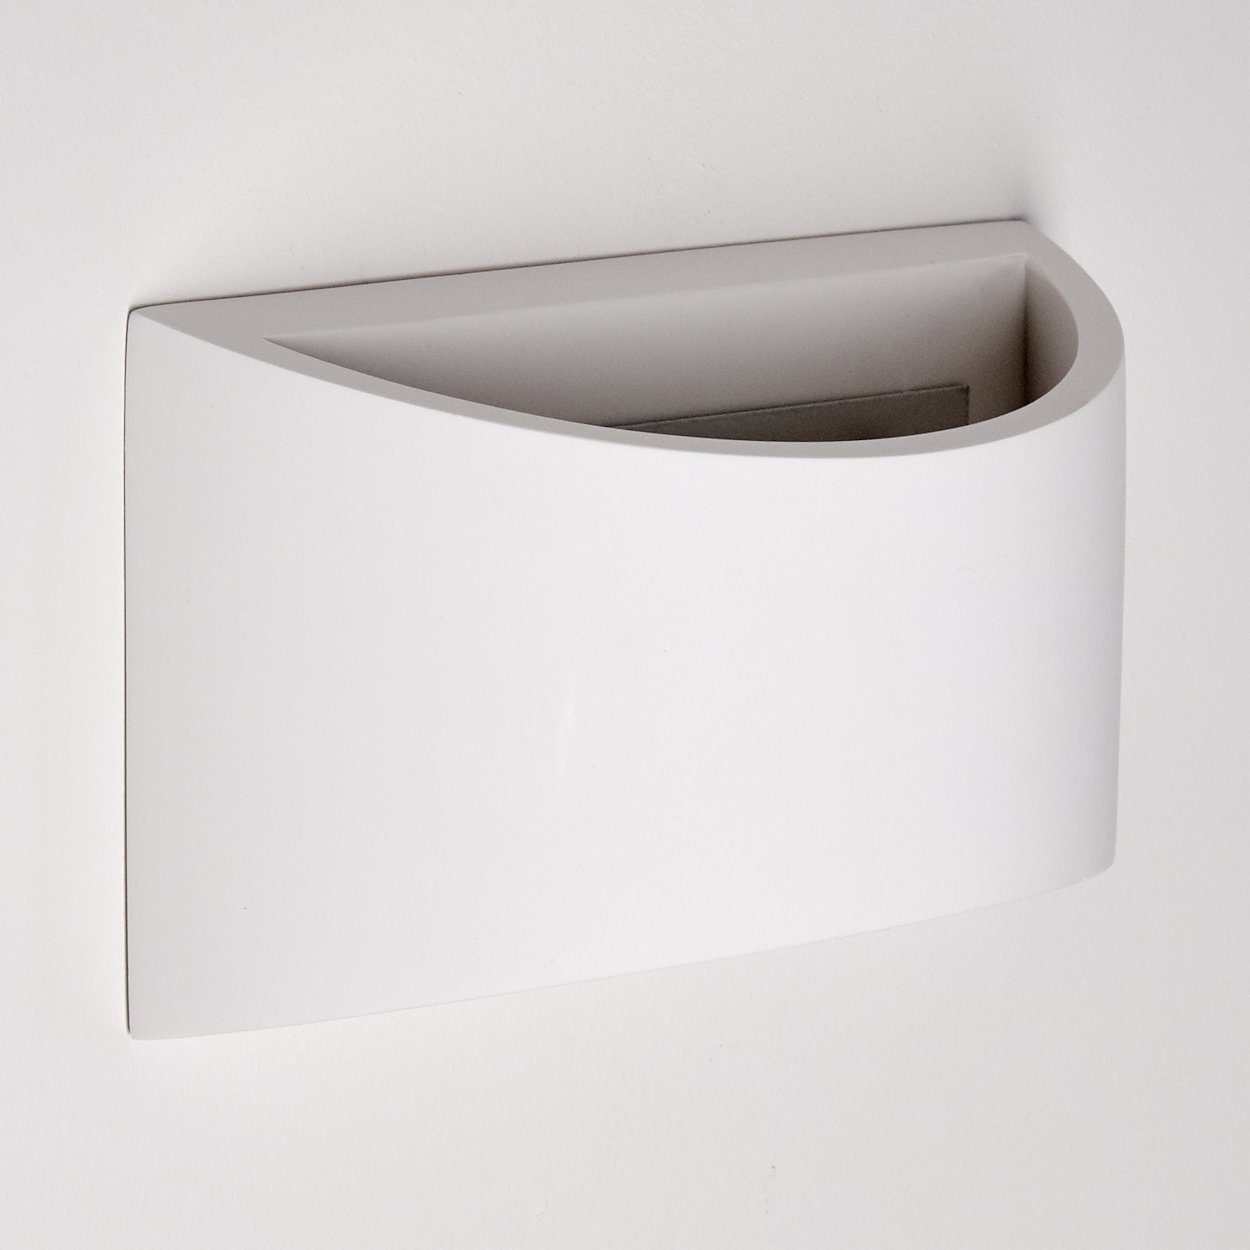 & in Weiß, bemalbar handelsüblichen Wandlampe Leuchtmittel, 1xG9, Up Innen Keramik mit mit »Gromo« Down-Effekt, hofstein ohne aus Farben Wandleuchte